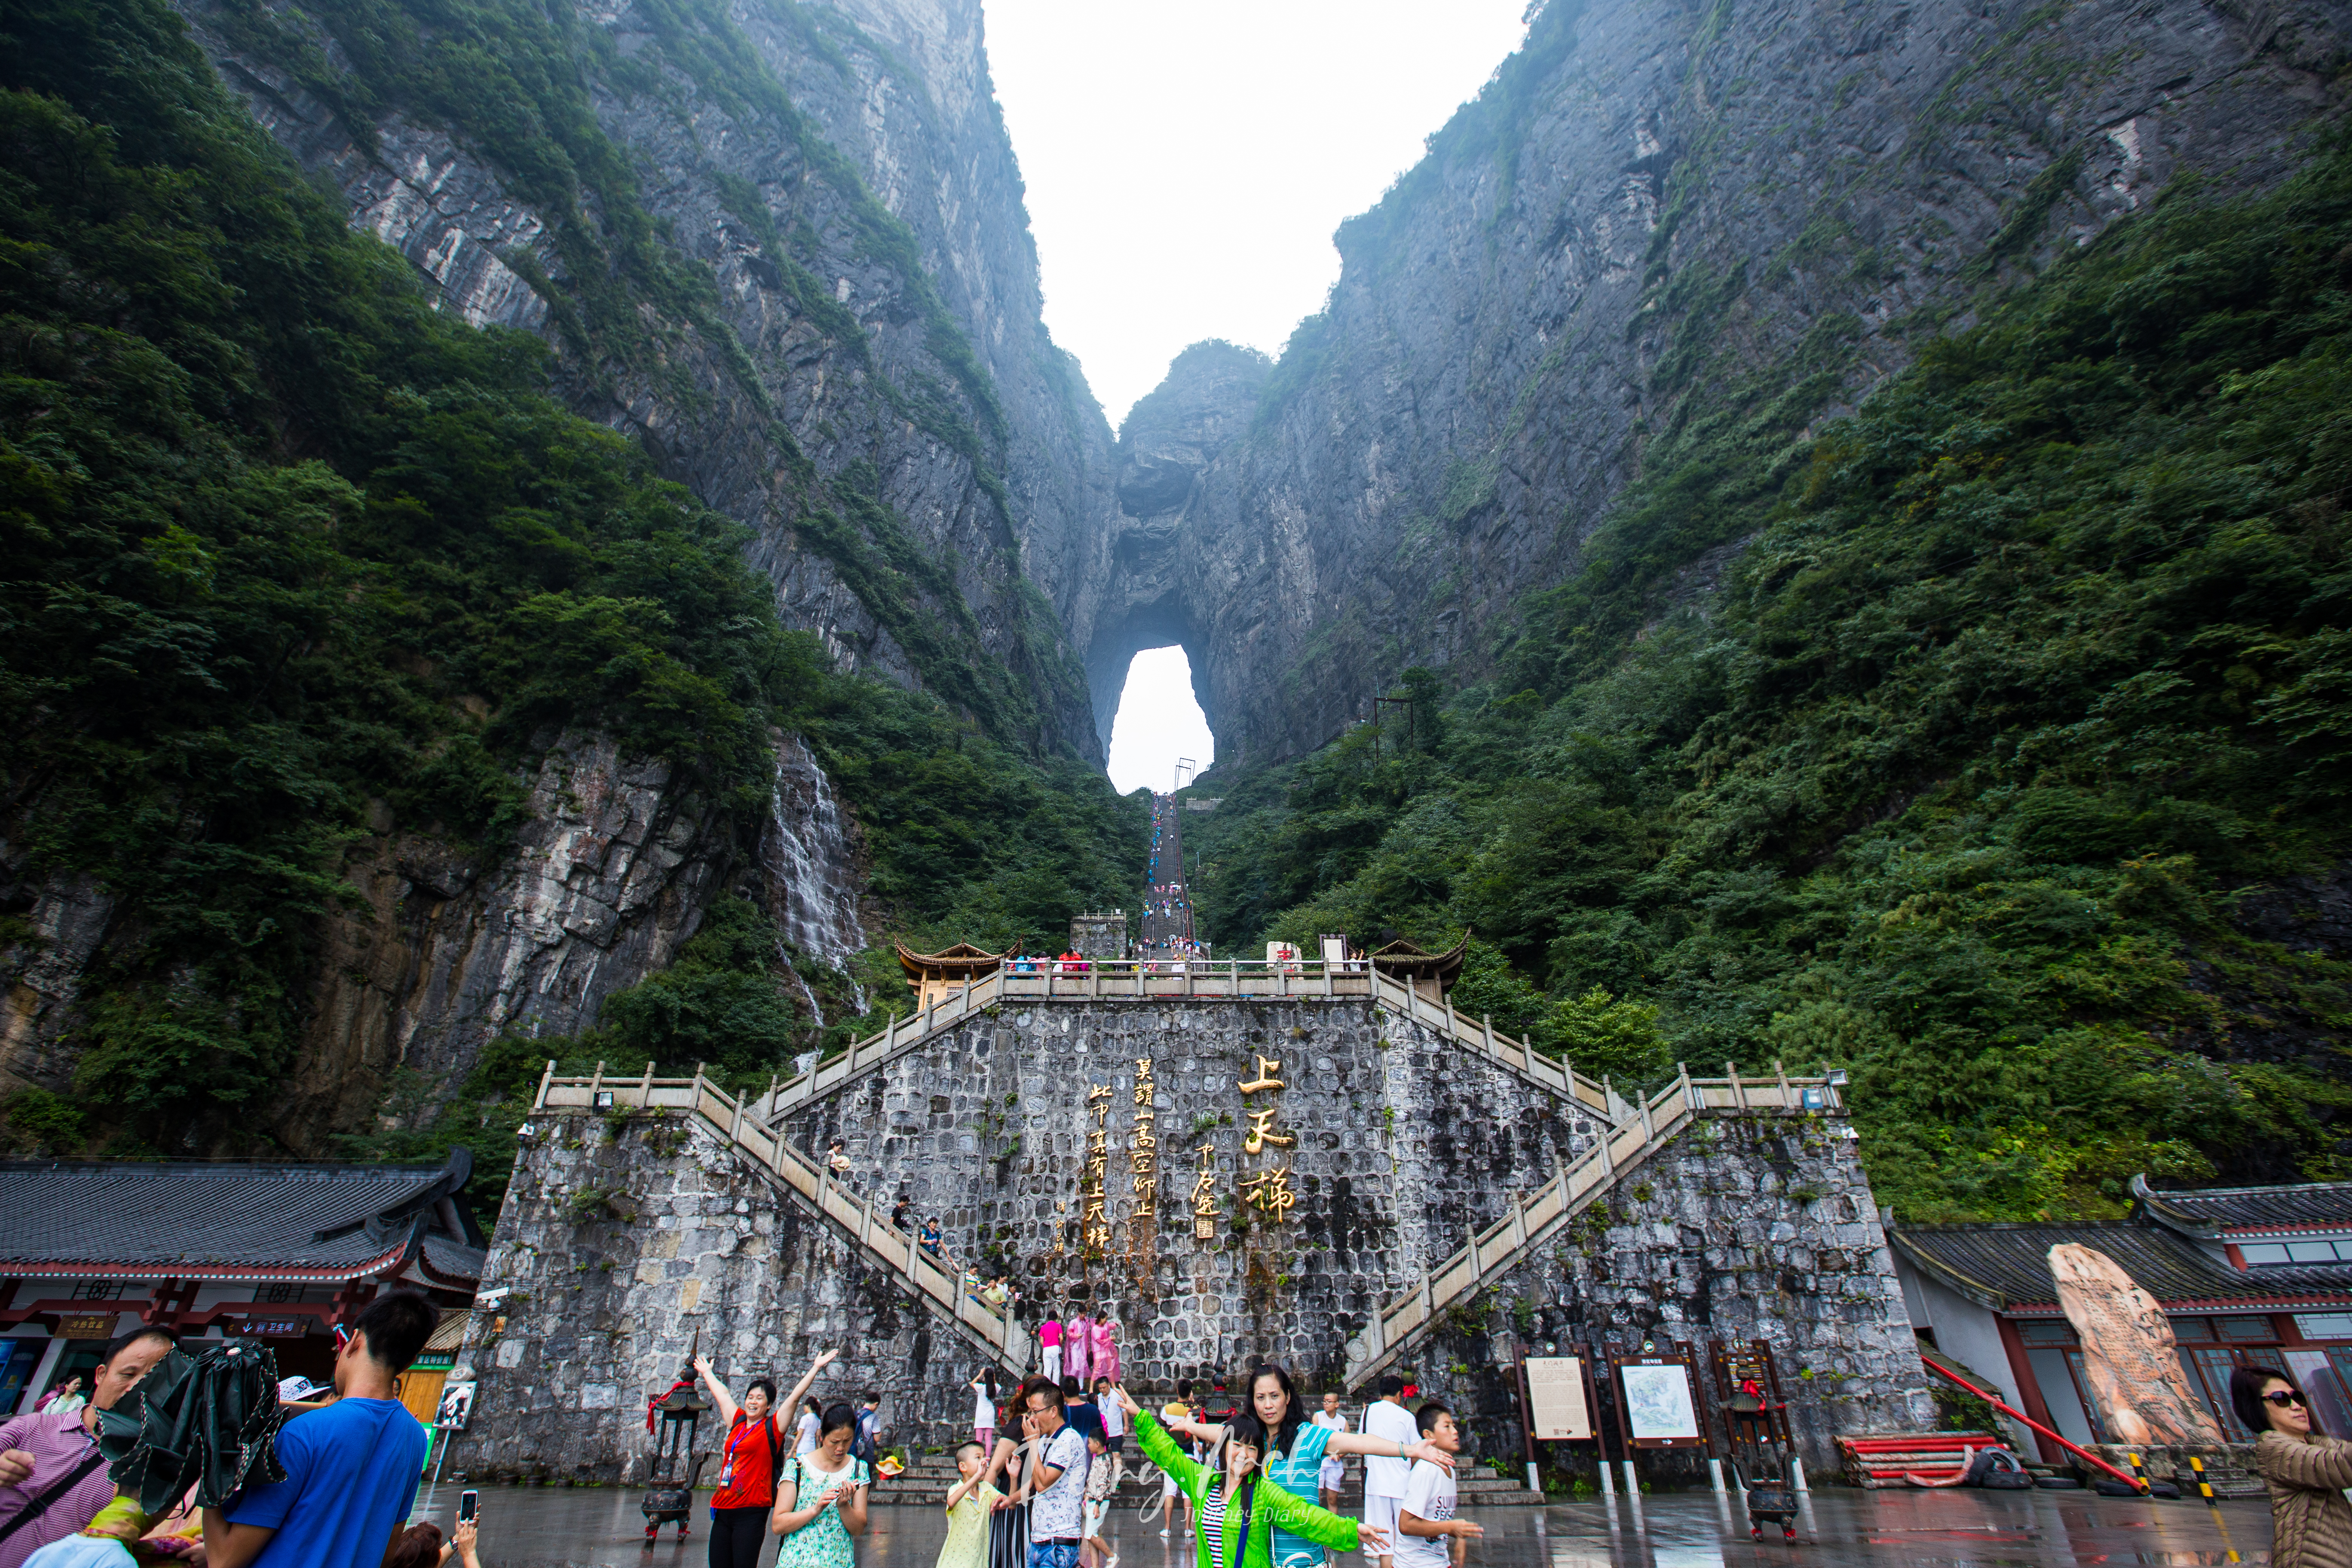 เที่ยวจีนเส้นทางสายอวตาร (3) – ประตูสวรรค์ เทียนเหมินซาน Tianmen Mountain